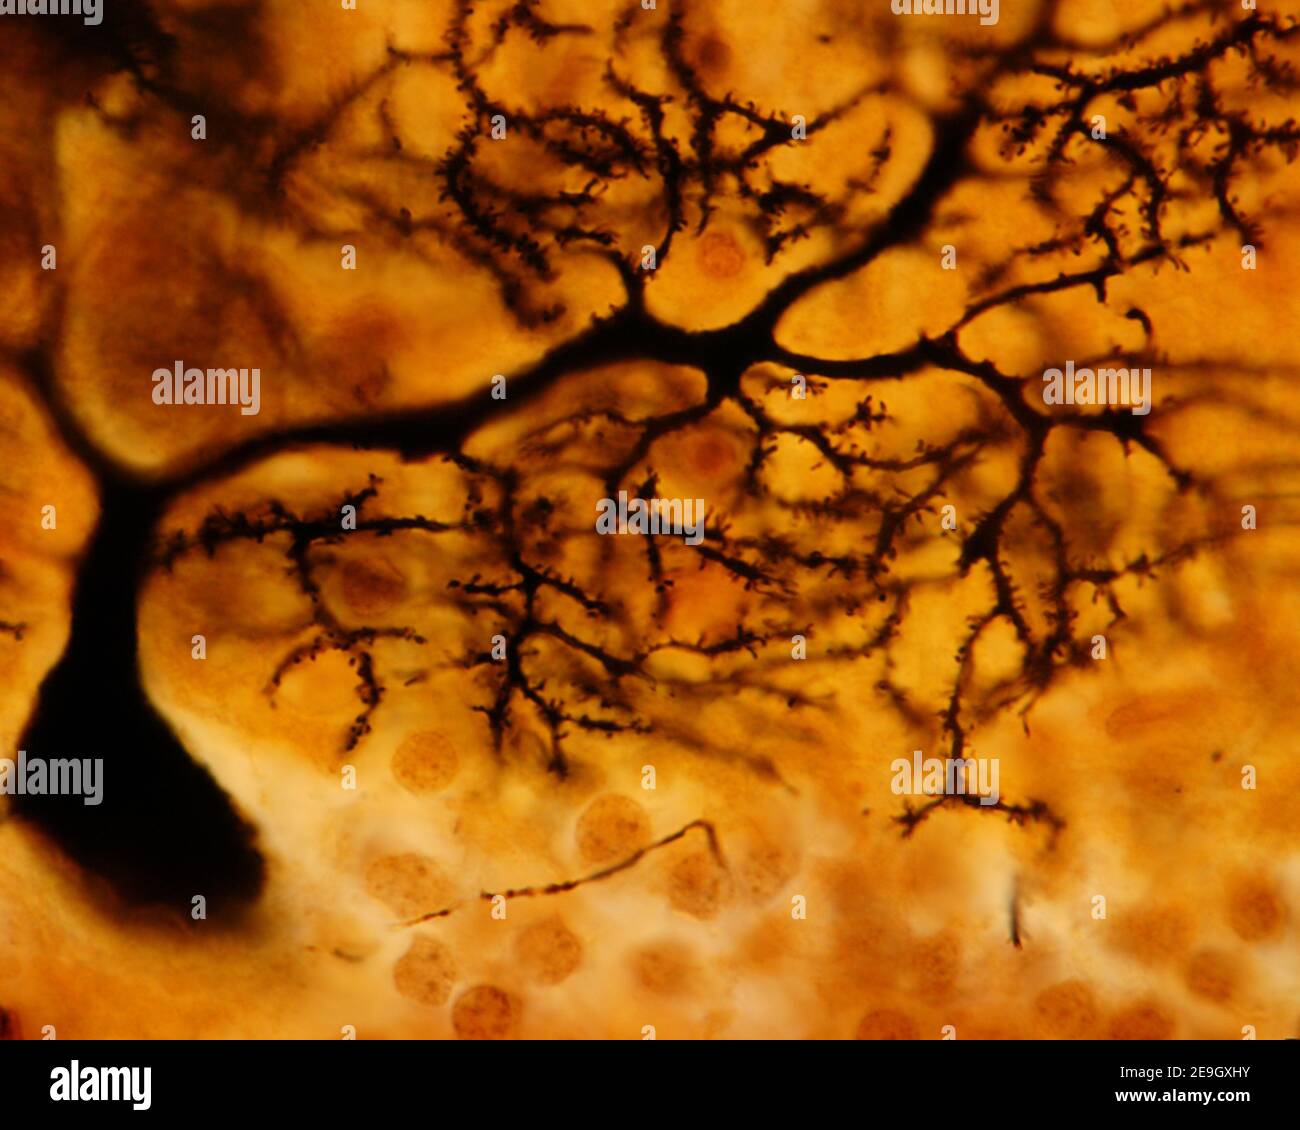 Neurone de Purkinje du cortex cérébelleux. Le chromate d’argent de Golgi montrant des dendrites provenant du soma. Les branches les plus minces montrent des épines abondantes Banque D'Images